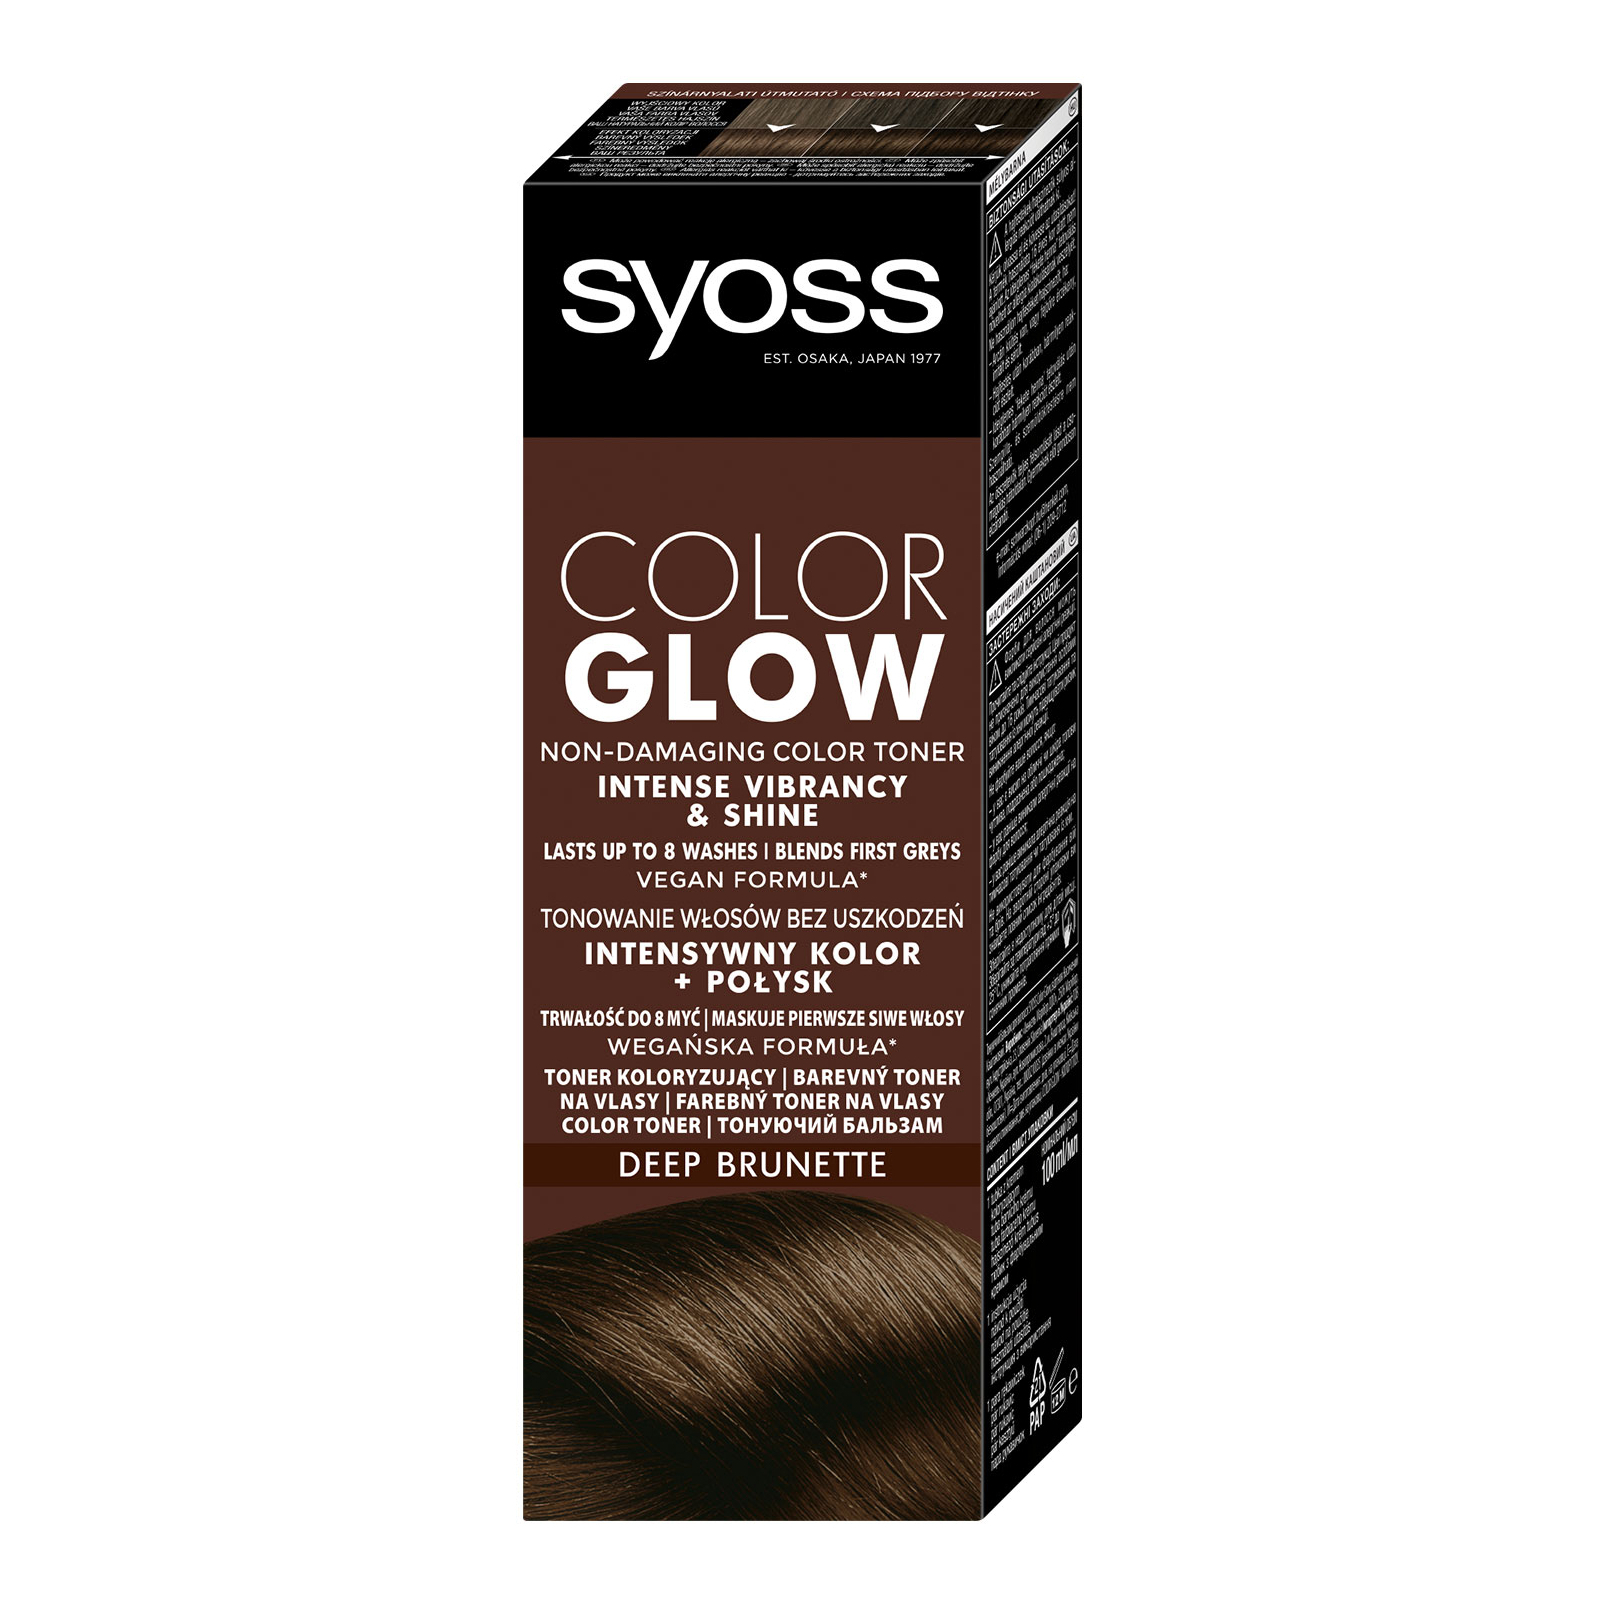 Відтінковий бальзам Syoss Color Glow Cool Brunette - Холодний Каштановий 100 мл (9000101679427) зображення 2